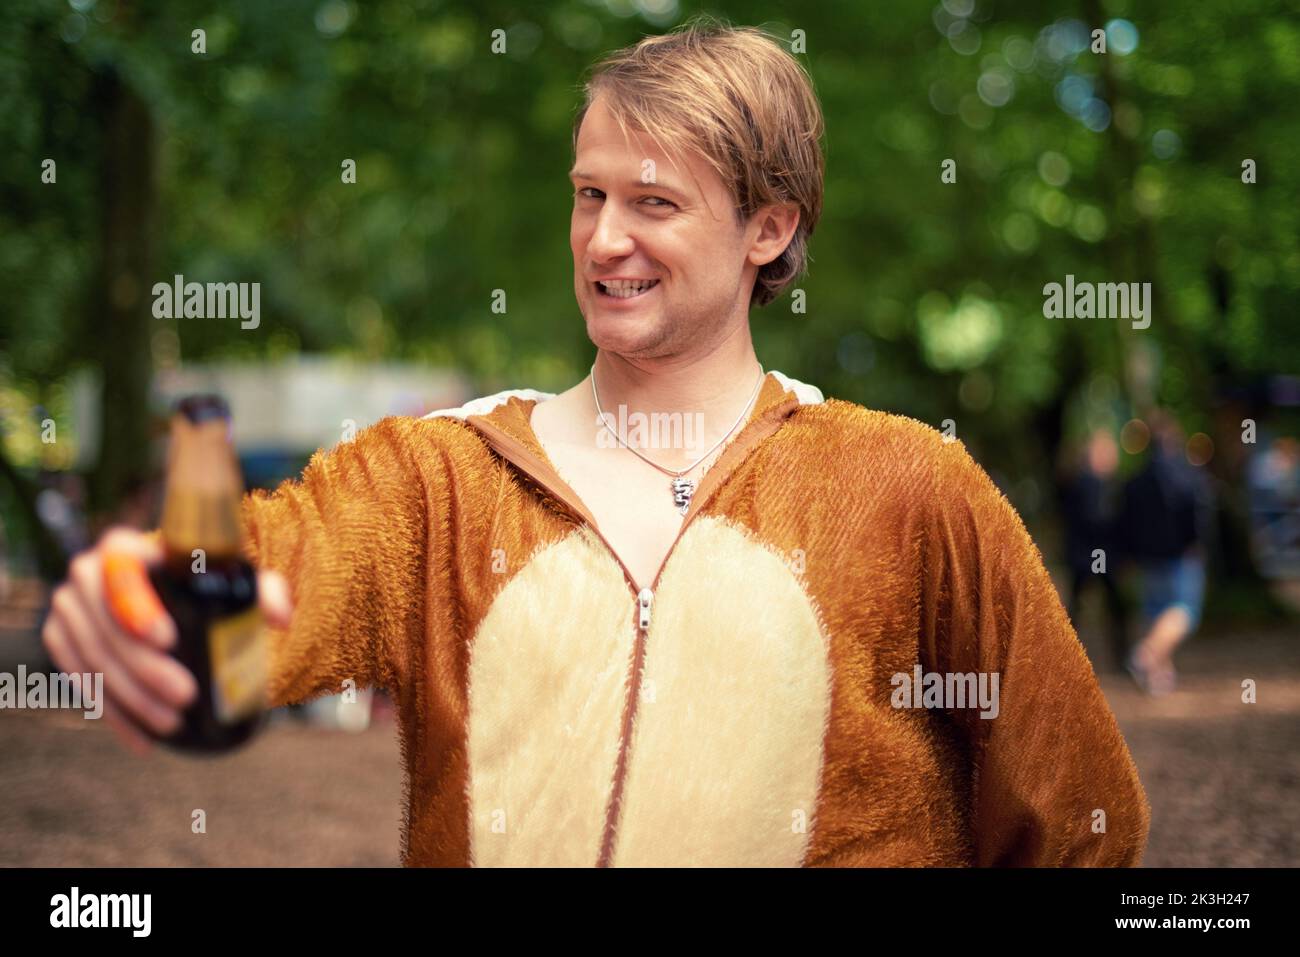 Partytier. Porträt eines jungen Mannes, der draußen ein Bier trinkt, während er in einem Bärenanzug gekleidet ist. Stockfoto